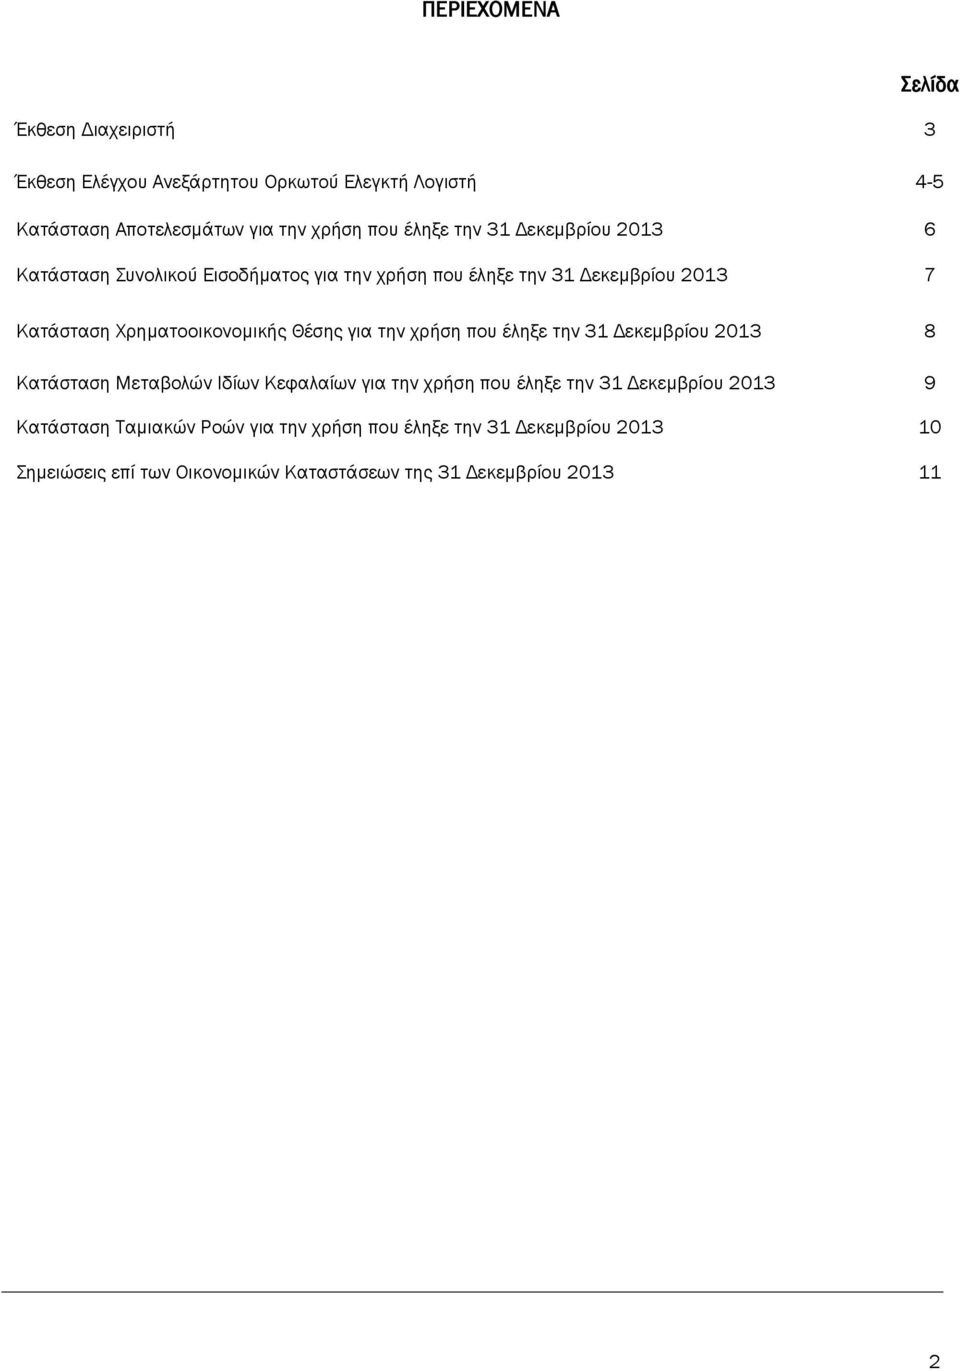 Θέσης για την χρήση που έληξε την 31 Δεκεμβρίου 2013 8 Κατάσταση Μεταβολών Ιδίων Κεφαλαίων για την χρήση που έληξε την 31 Δεκεμβρίου 2013 9